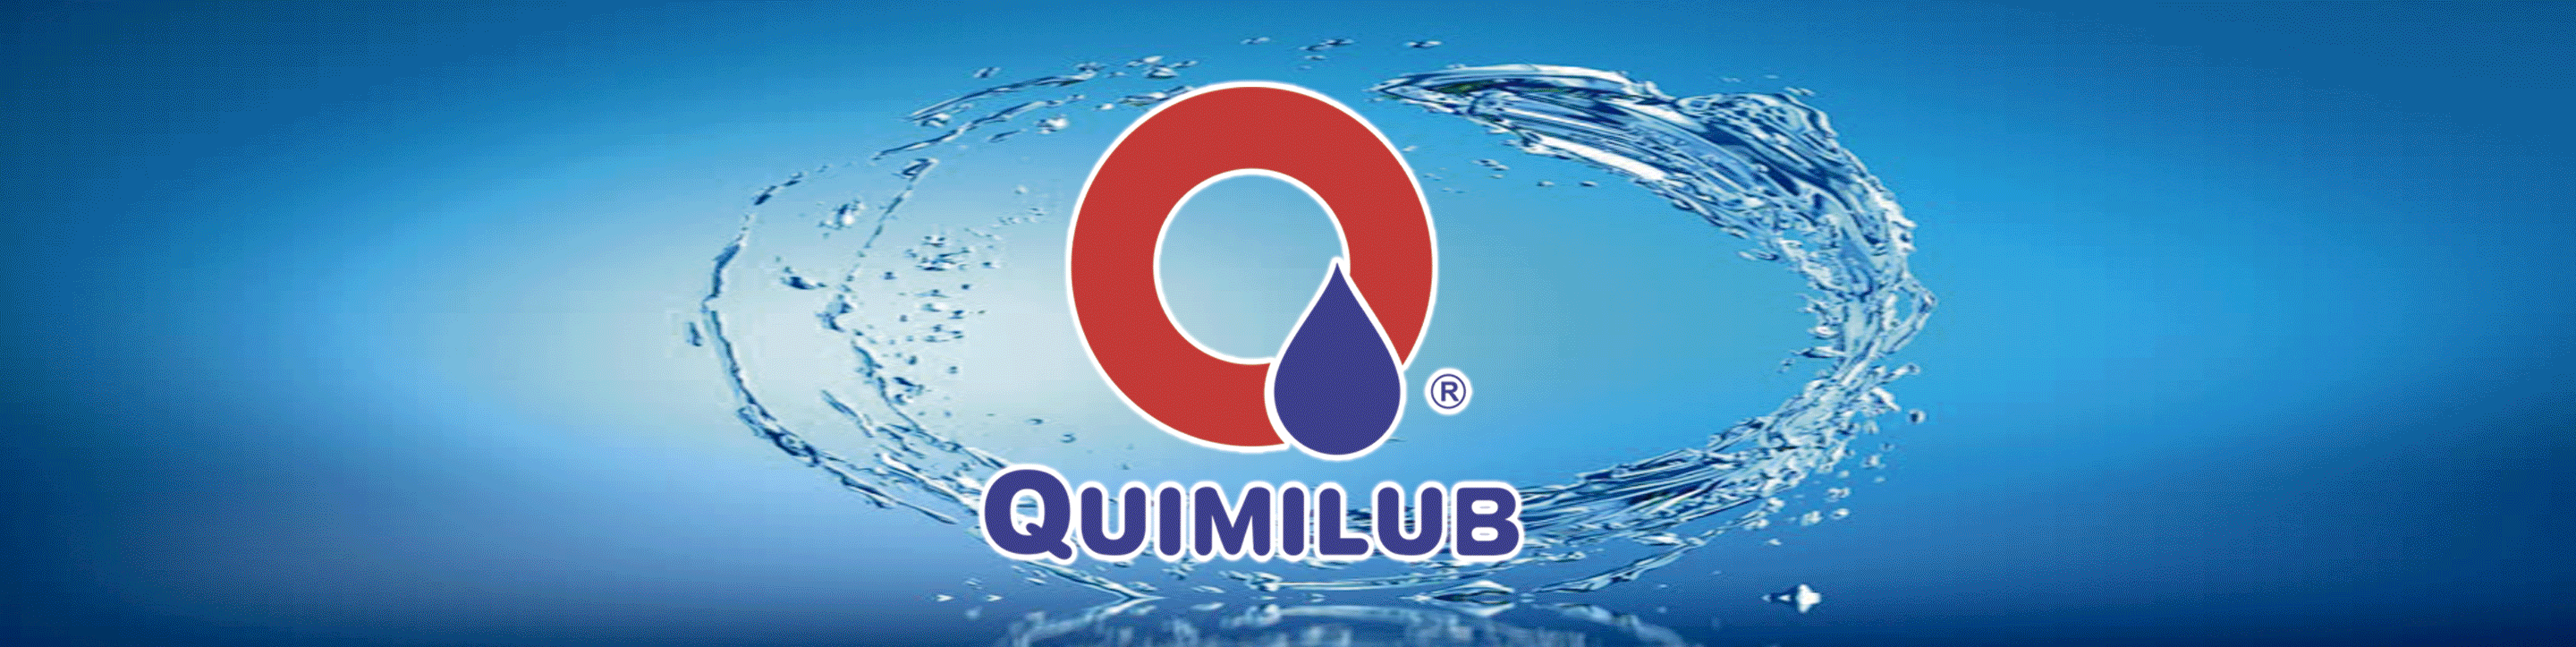 Quimilub - Ind. e Comércio de Produtos Químicos